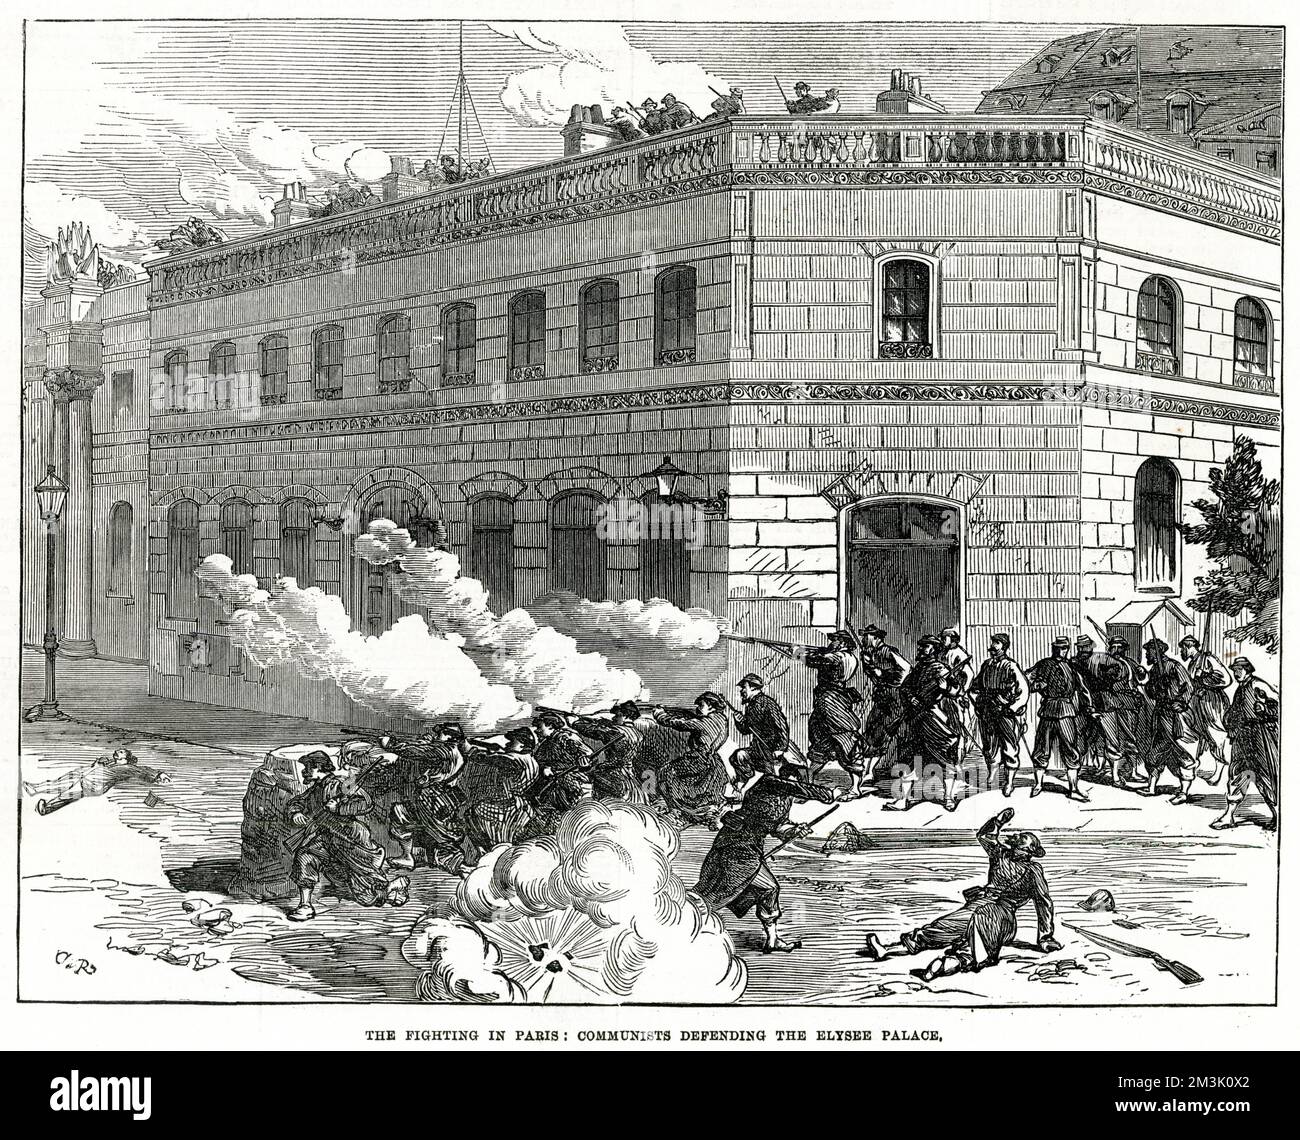 Kommunisten verteidigen Barrikaden in der Nähe des Elysee-Palastes, während des Kampfes mit den Truppen der Versailles-Regierung, Paris, 1871. Datum: 1871 Stockfoto